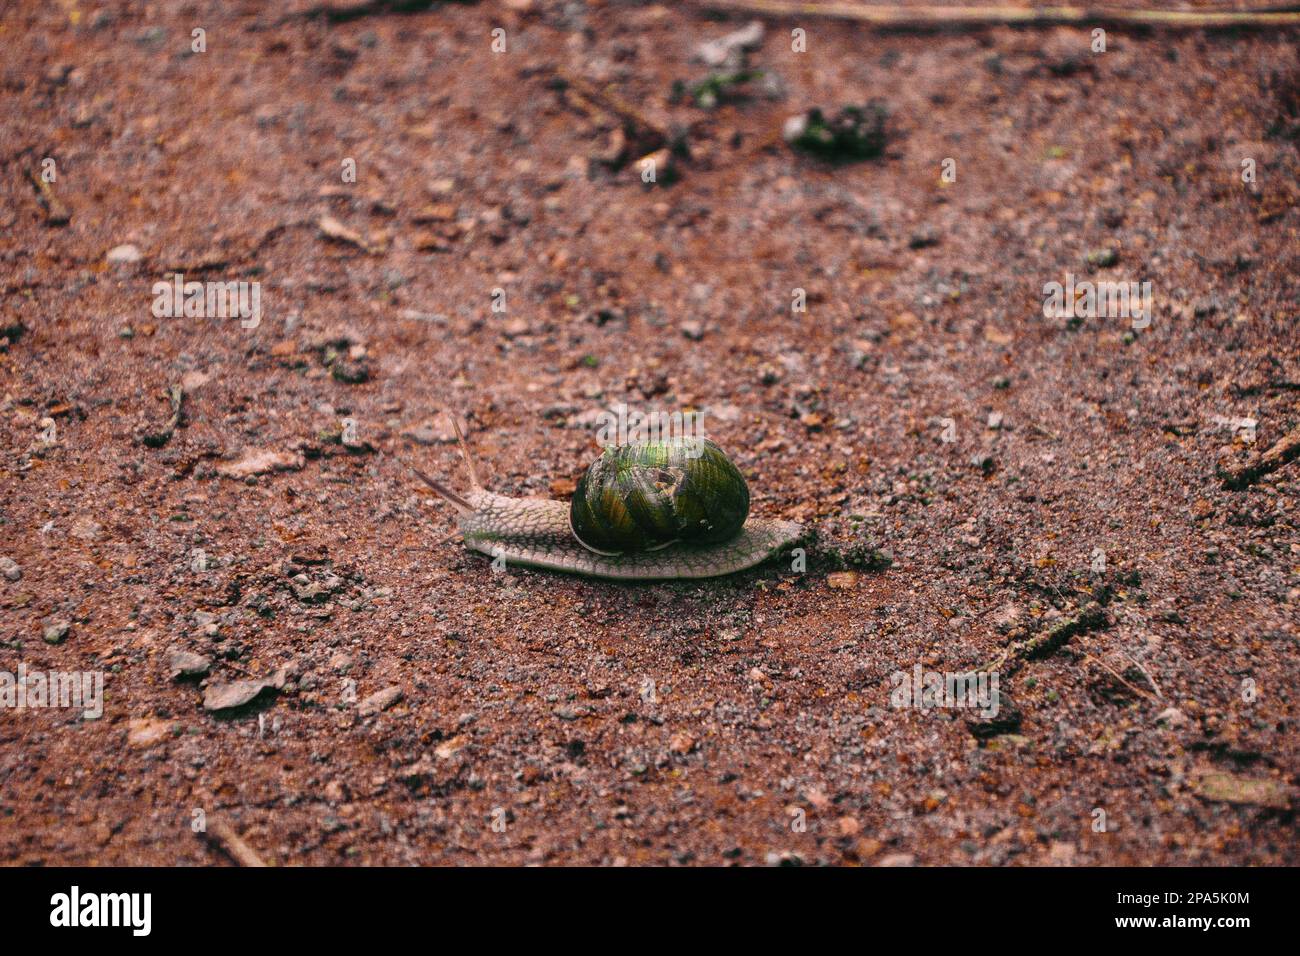 Makro-ansicht des gemeinsamen Braun Garten Schnecke (Cornu aspersum), ist eine Pflanzenart aus der Gattung der land Schnecke. Eine terrestrische Lungenschnecken aus der Familie Hel Stockfoto